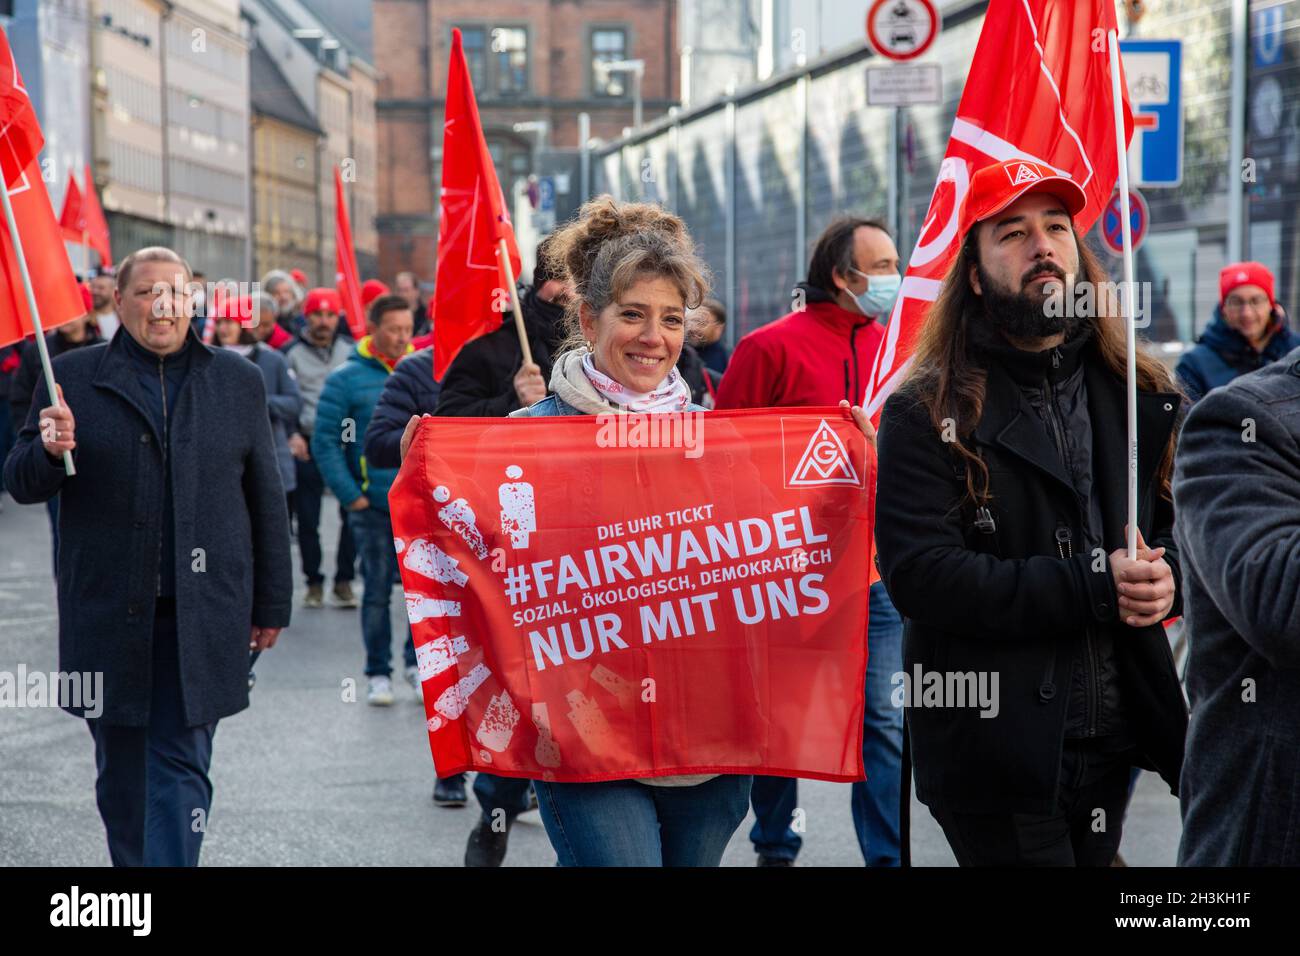 AM 29.Oktober 2021 versammelten sich ein paar wenige hunbert IG Metaller in München um von verschiedenen Fingern zu einer Kundgebung am Odeonsplatz zu demonstrieren.Die 90 Grünen und FDP, unter anderem Klimagerechtigkeit, faire Löhne, ein Ende der Schuldenbremmse und keine Flexibilisierung der Arbeitszeiten.- le 29 octobre 2021, quelques centaines de syndicalistes de l'IG Metall se sont réunis à Munich, en Allemagne, pour protester devant les QG du CSU, du SPD, des Verts et du FDP.Ils exigent la justice climatique, des salaires équitables, une fin du frein à la dette et pas de fle Banque D'Images